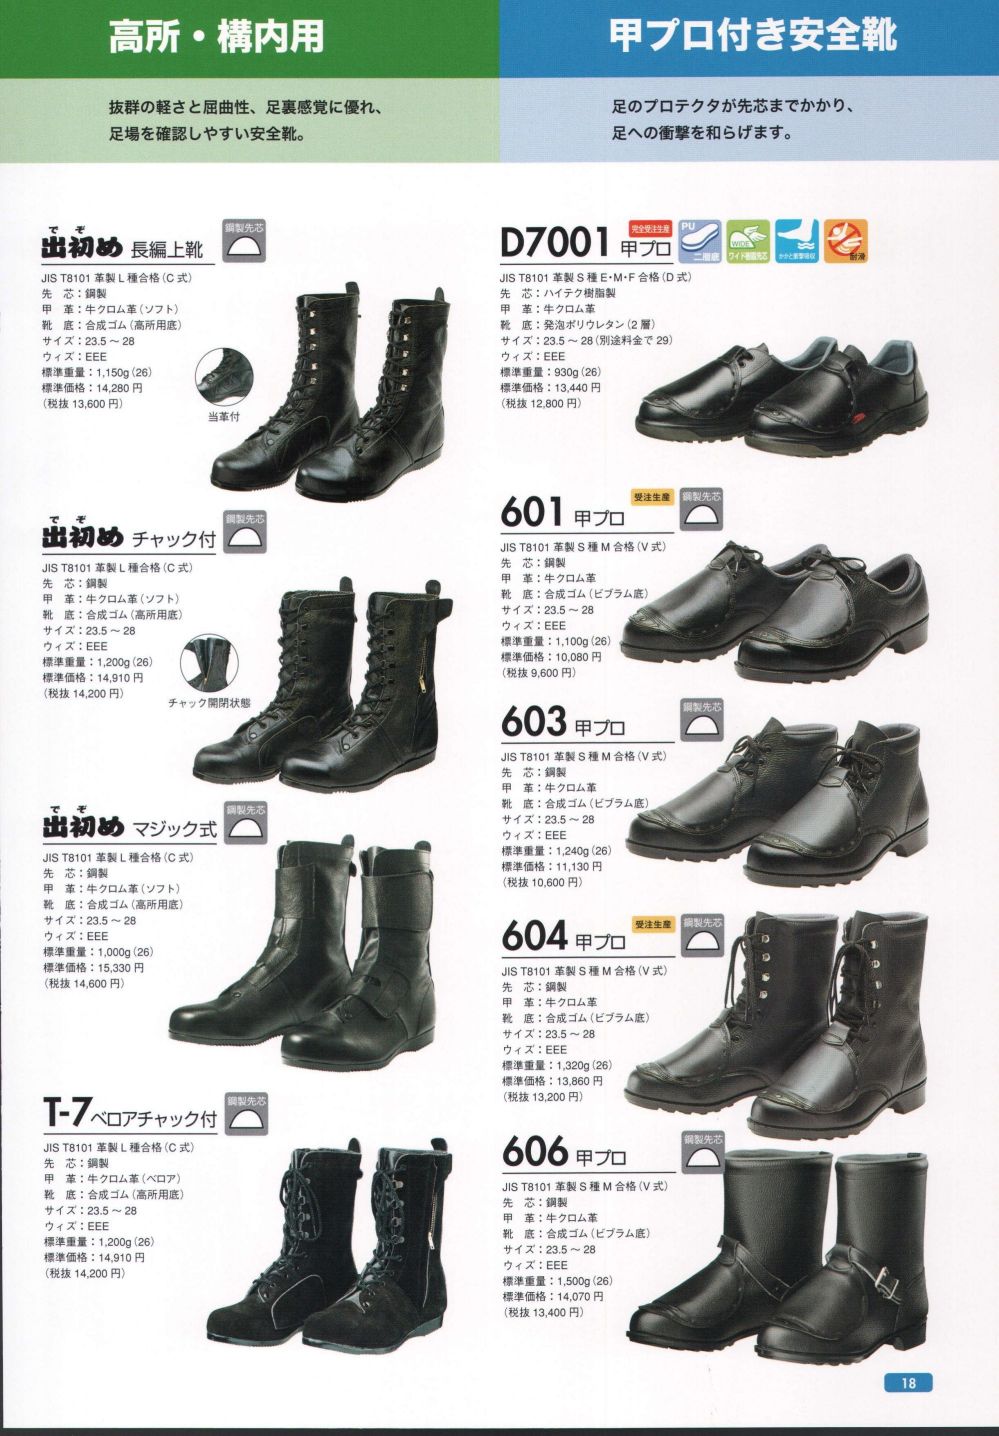 ドンケル 安全靴 半長靴 チャック付 JIS T8101革製S種合格(V式) 606T メンズ ブラック 28.0 cm - 7